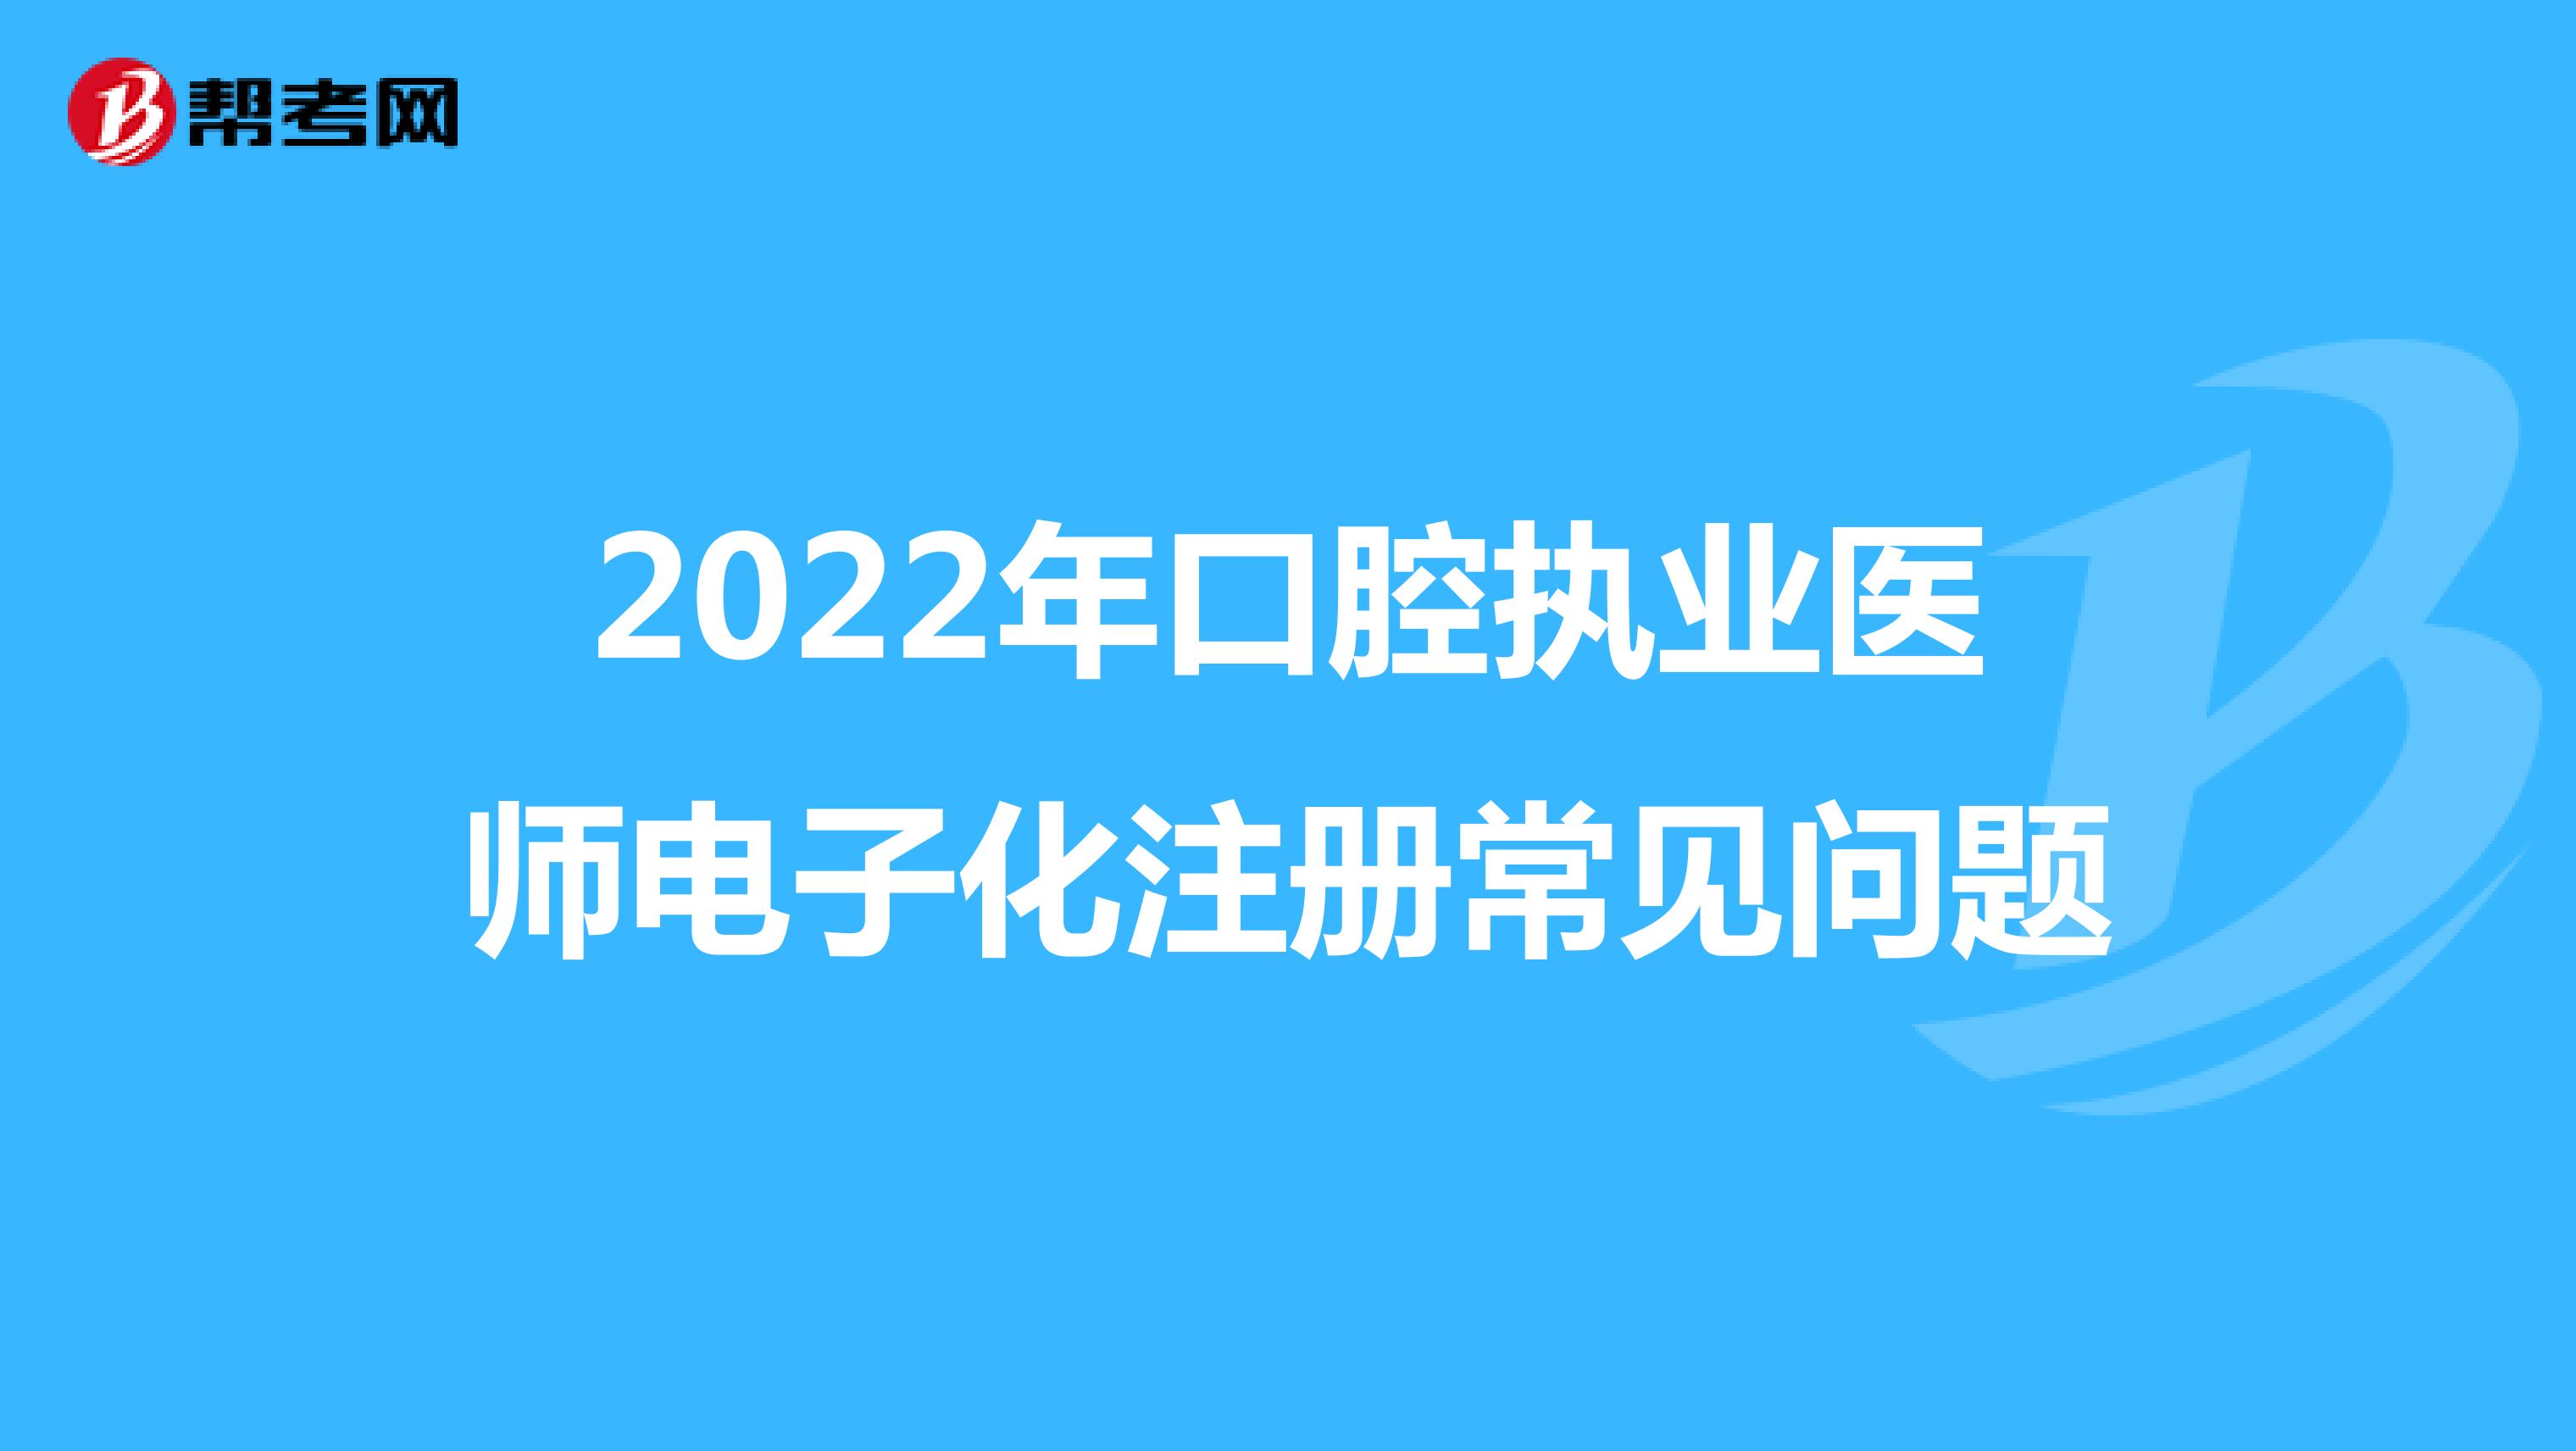 2022年口腔执业医师电子化注册常见问题